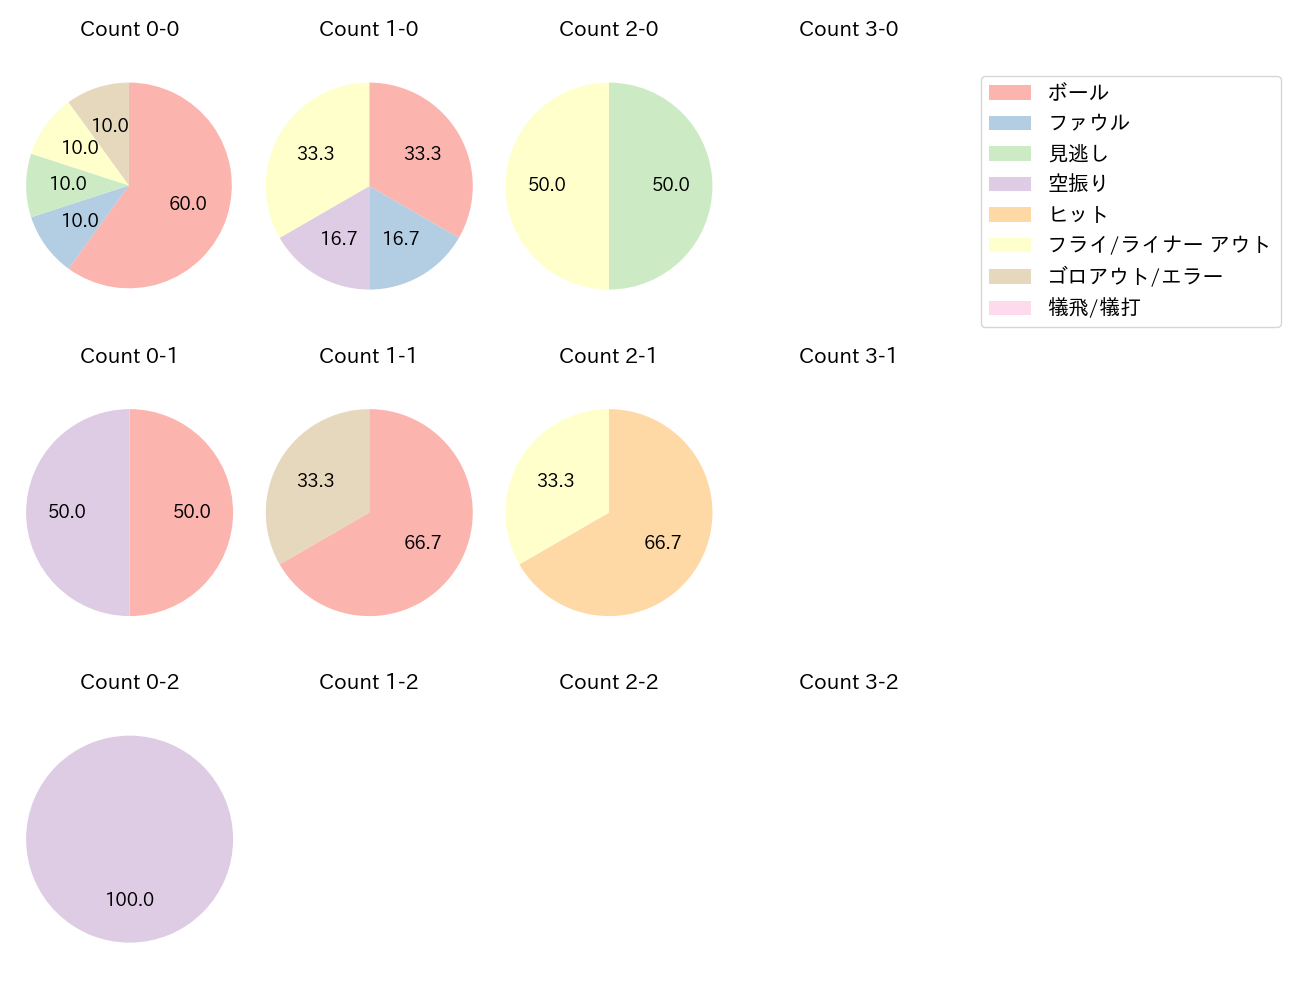 後藤 駿太の球数分布(2022年9月)